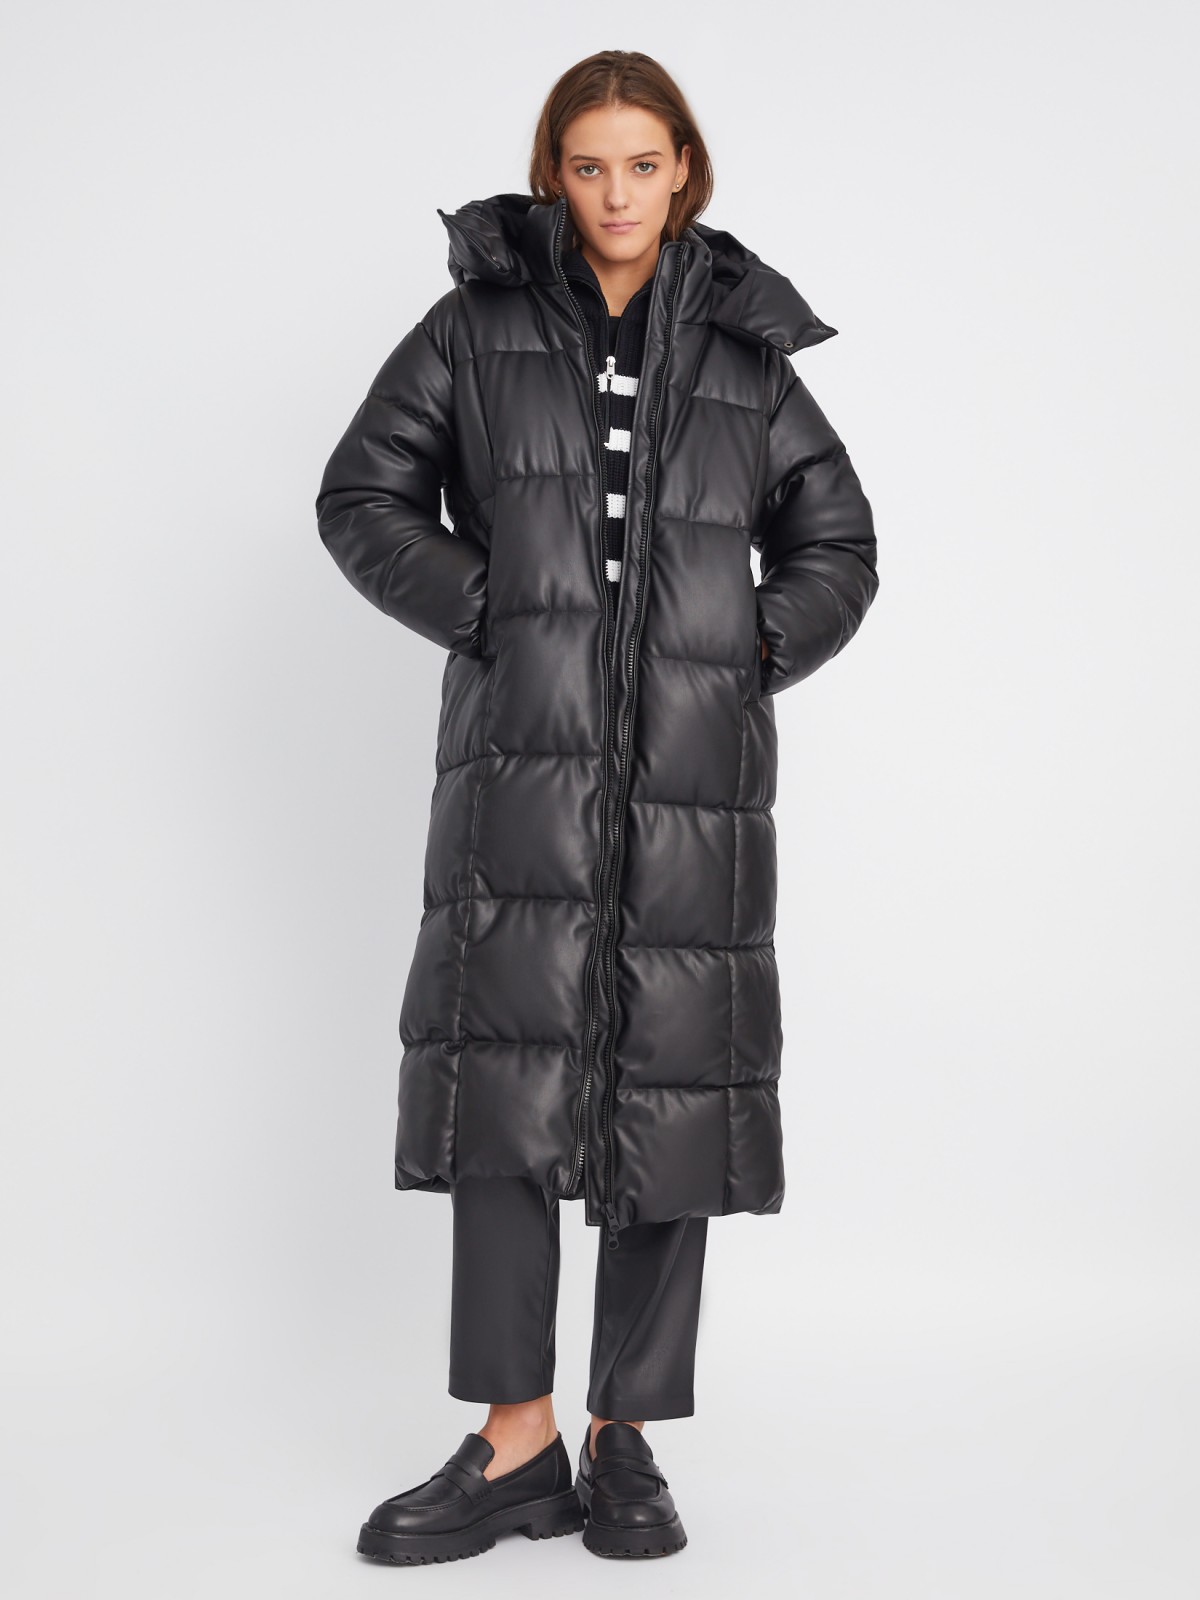 Тёплая стёганая куртка-пальто из экокожи с капюшоном и двойным воротником zolla черного цвета